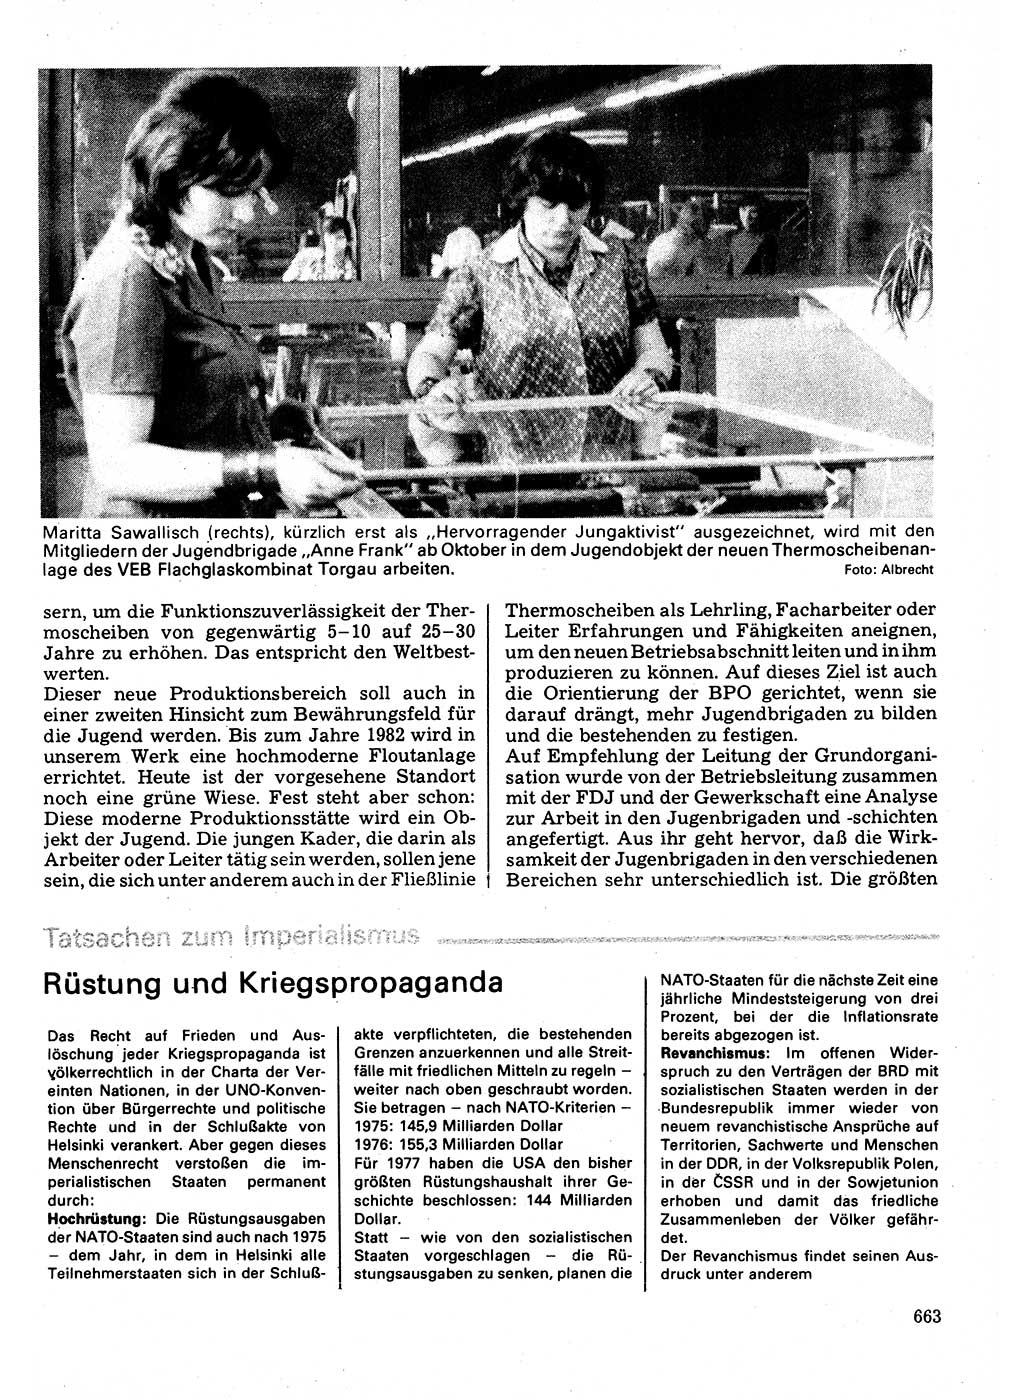 Neuer Weg (NW), Organ des Zentralkomitees (ZK) der SED (Sozialistische Einheitspartei Deutschlands) für Fragen des Parteilebens, 32. Jahrgang [Deutsche Demokratische Republik (DDR)] 1977, Seite 663 (NW ZK SED DDR 1977, S. 663)